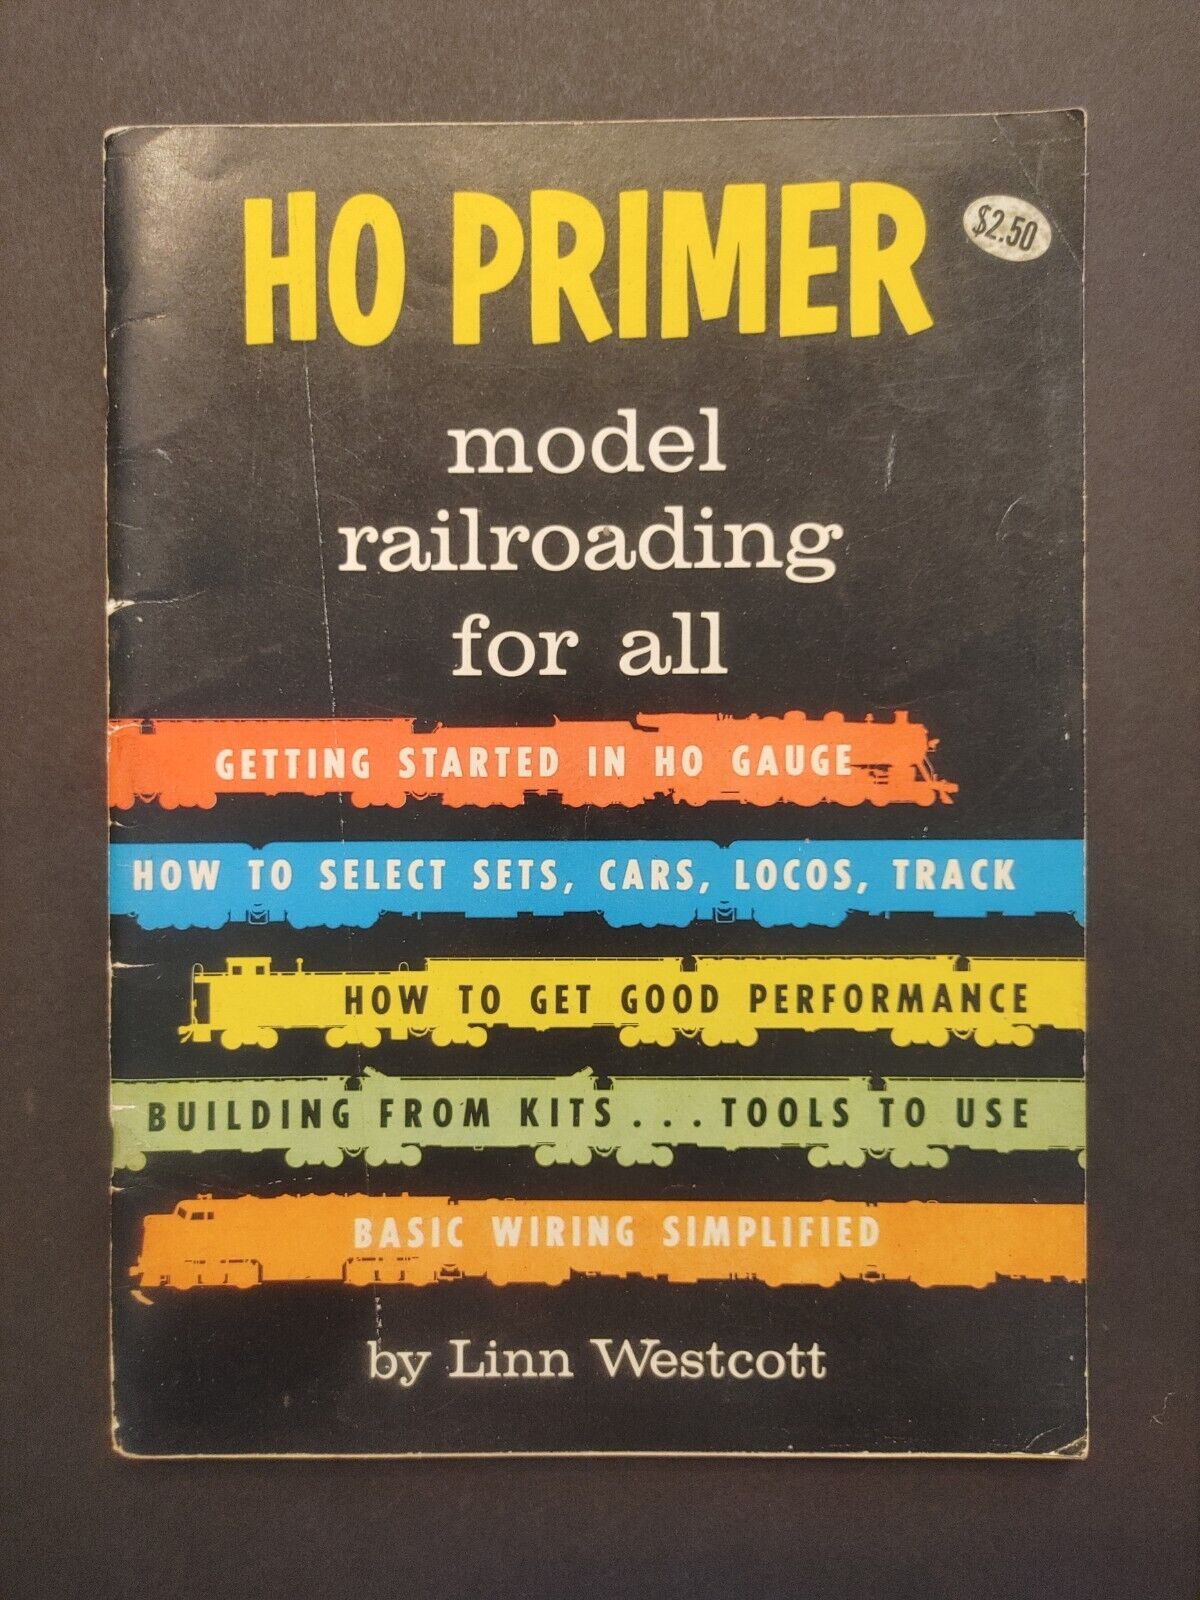 1964 HO Primer Model Railroading For All by Linn Westcott Soft Cover 